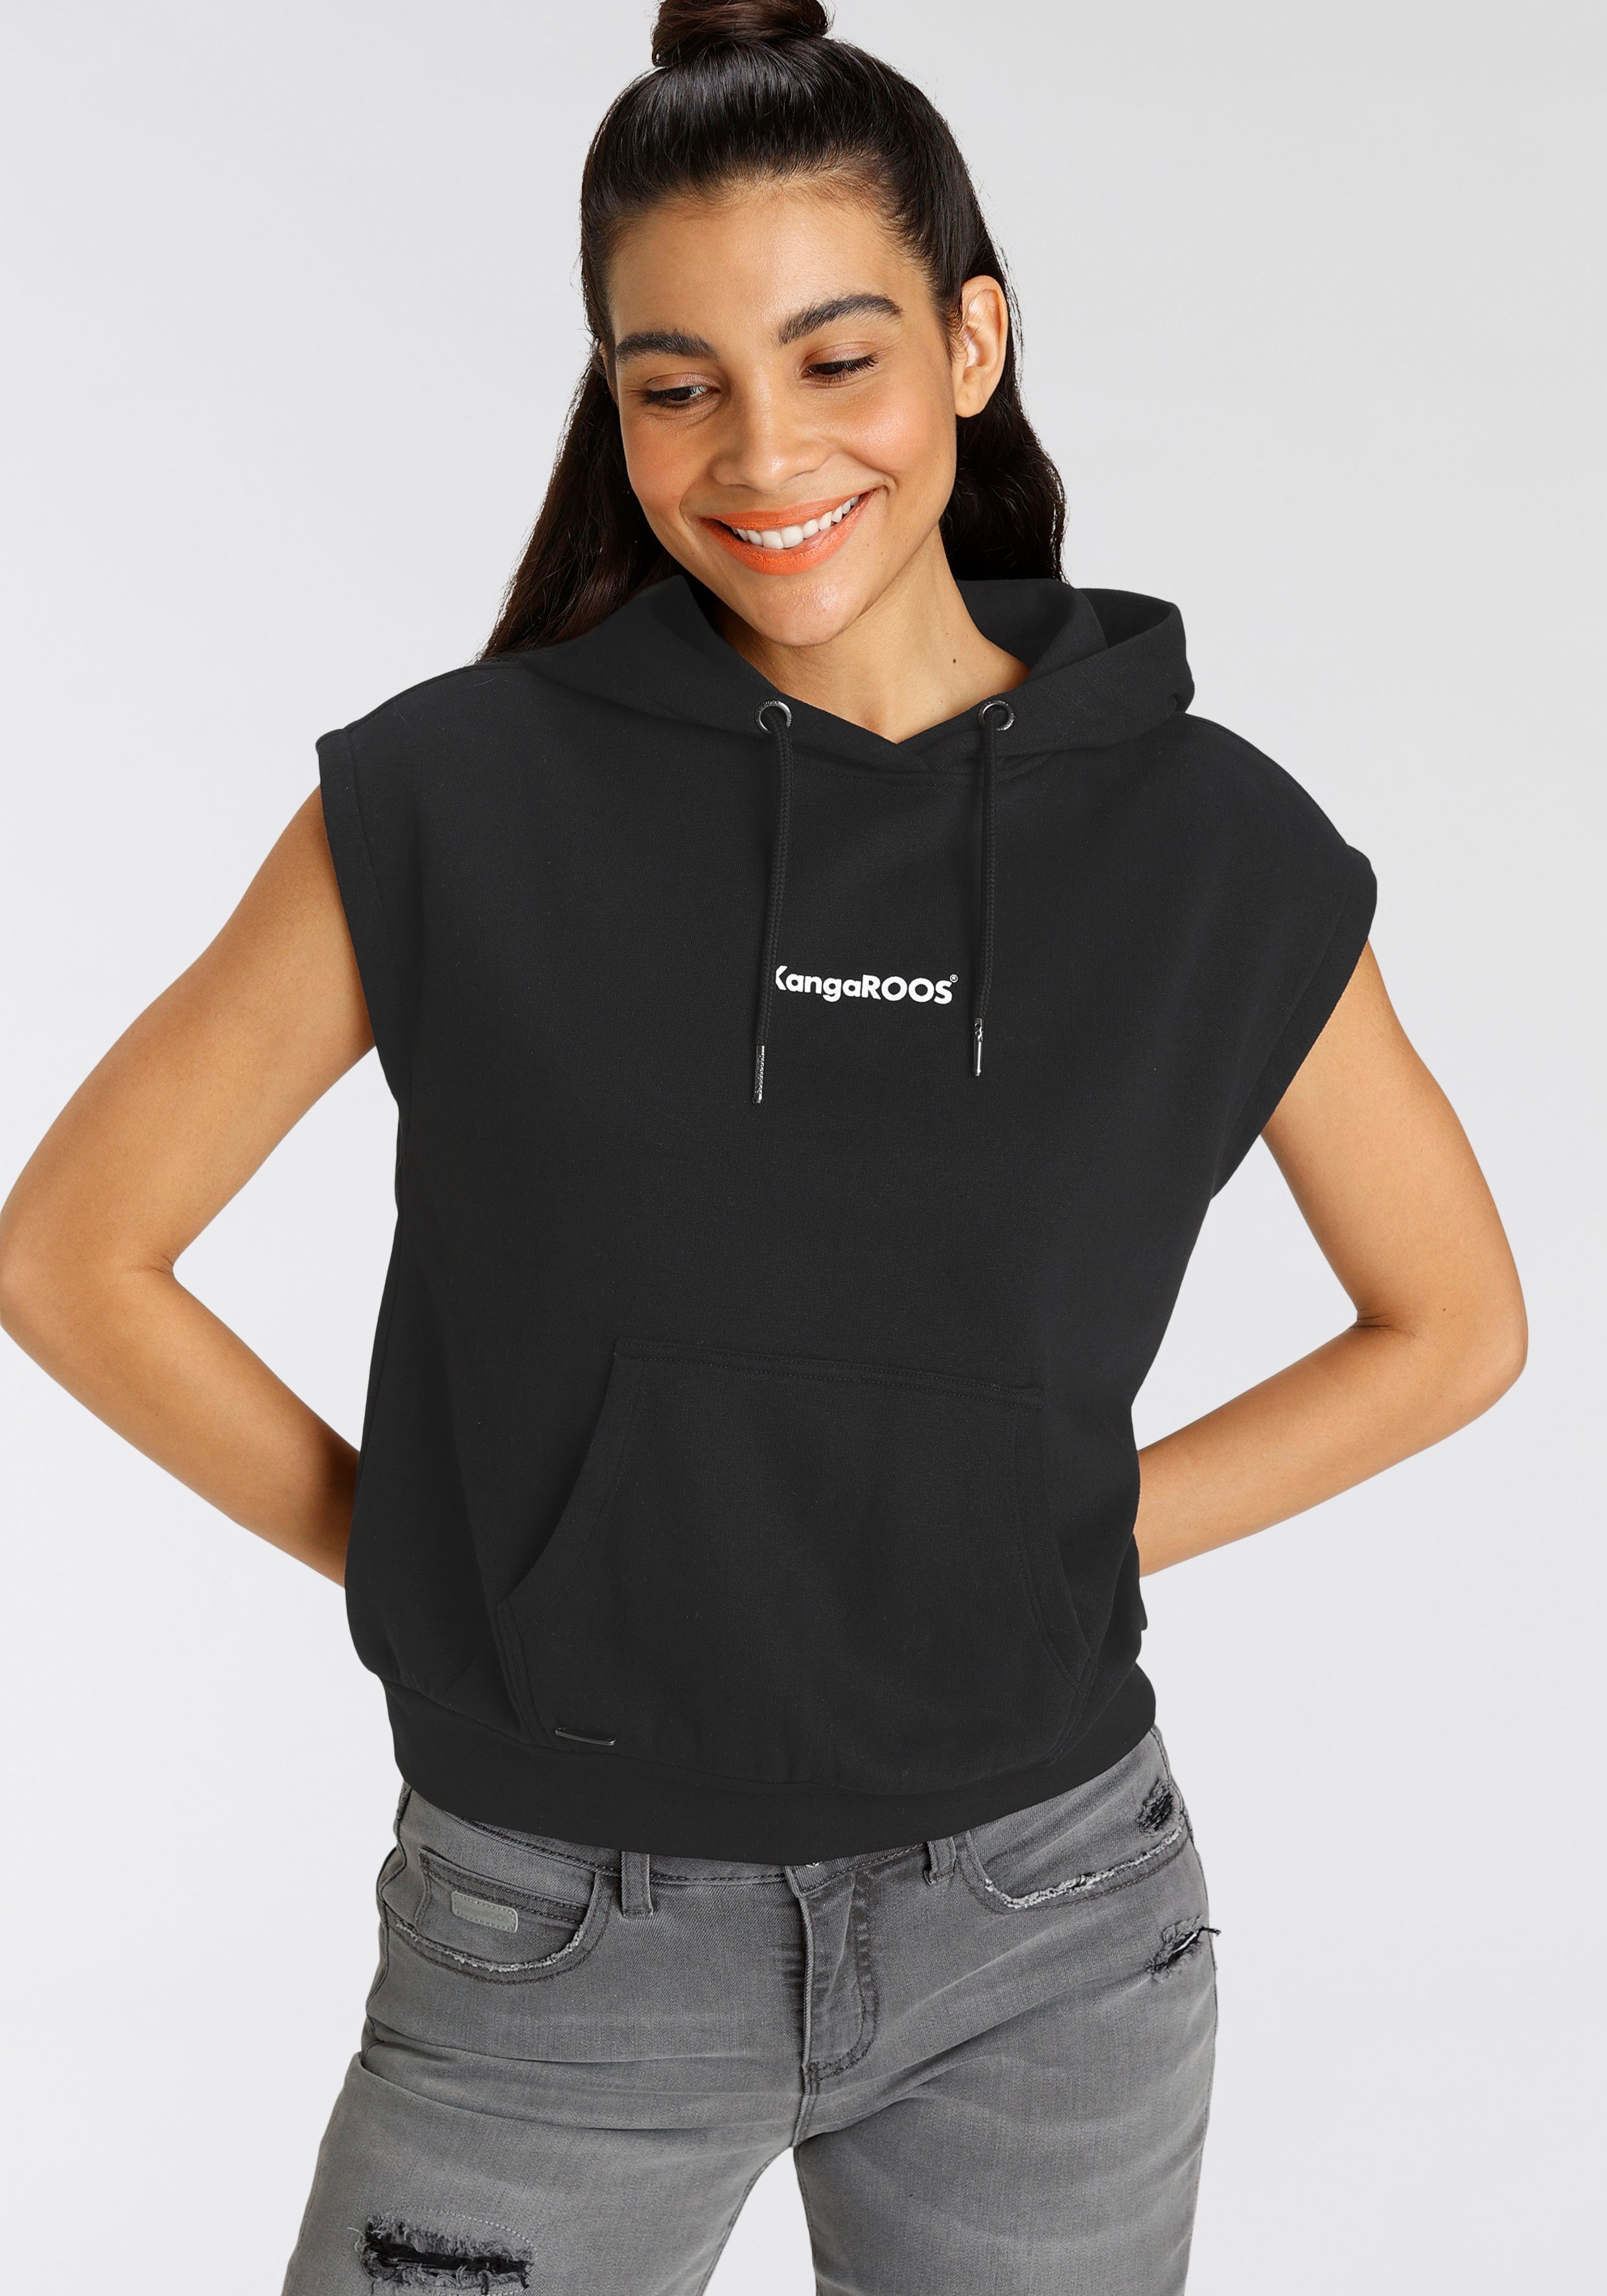 KangaROOS Sweatshirt mit Kapuze und kleinen Markenschriftzug - NEUE  KOLLEKTION